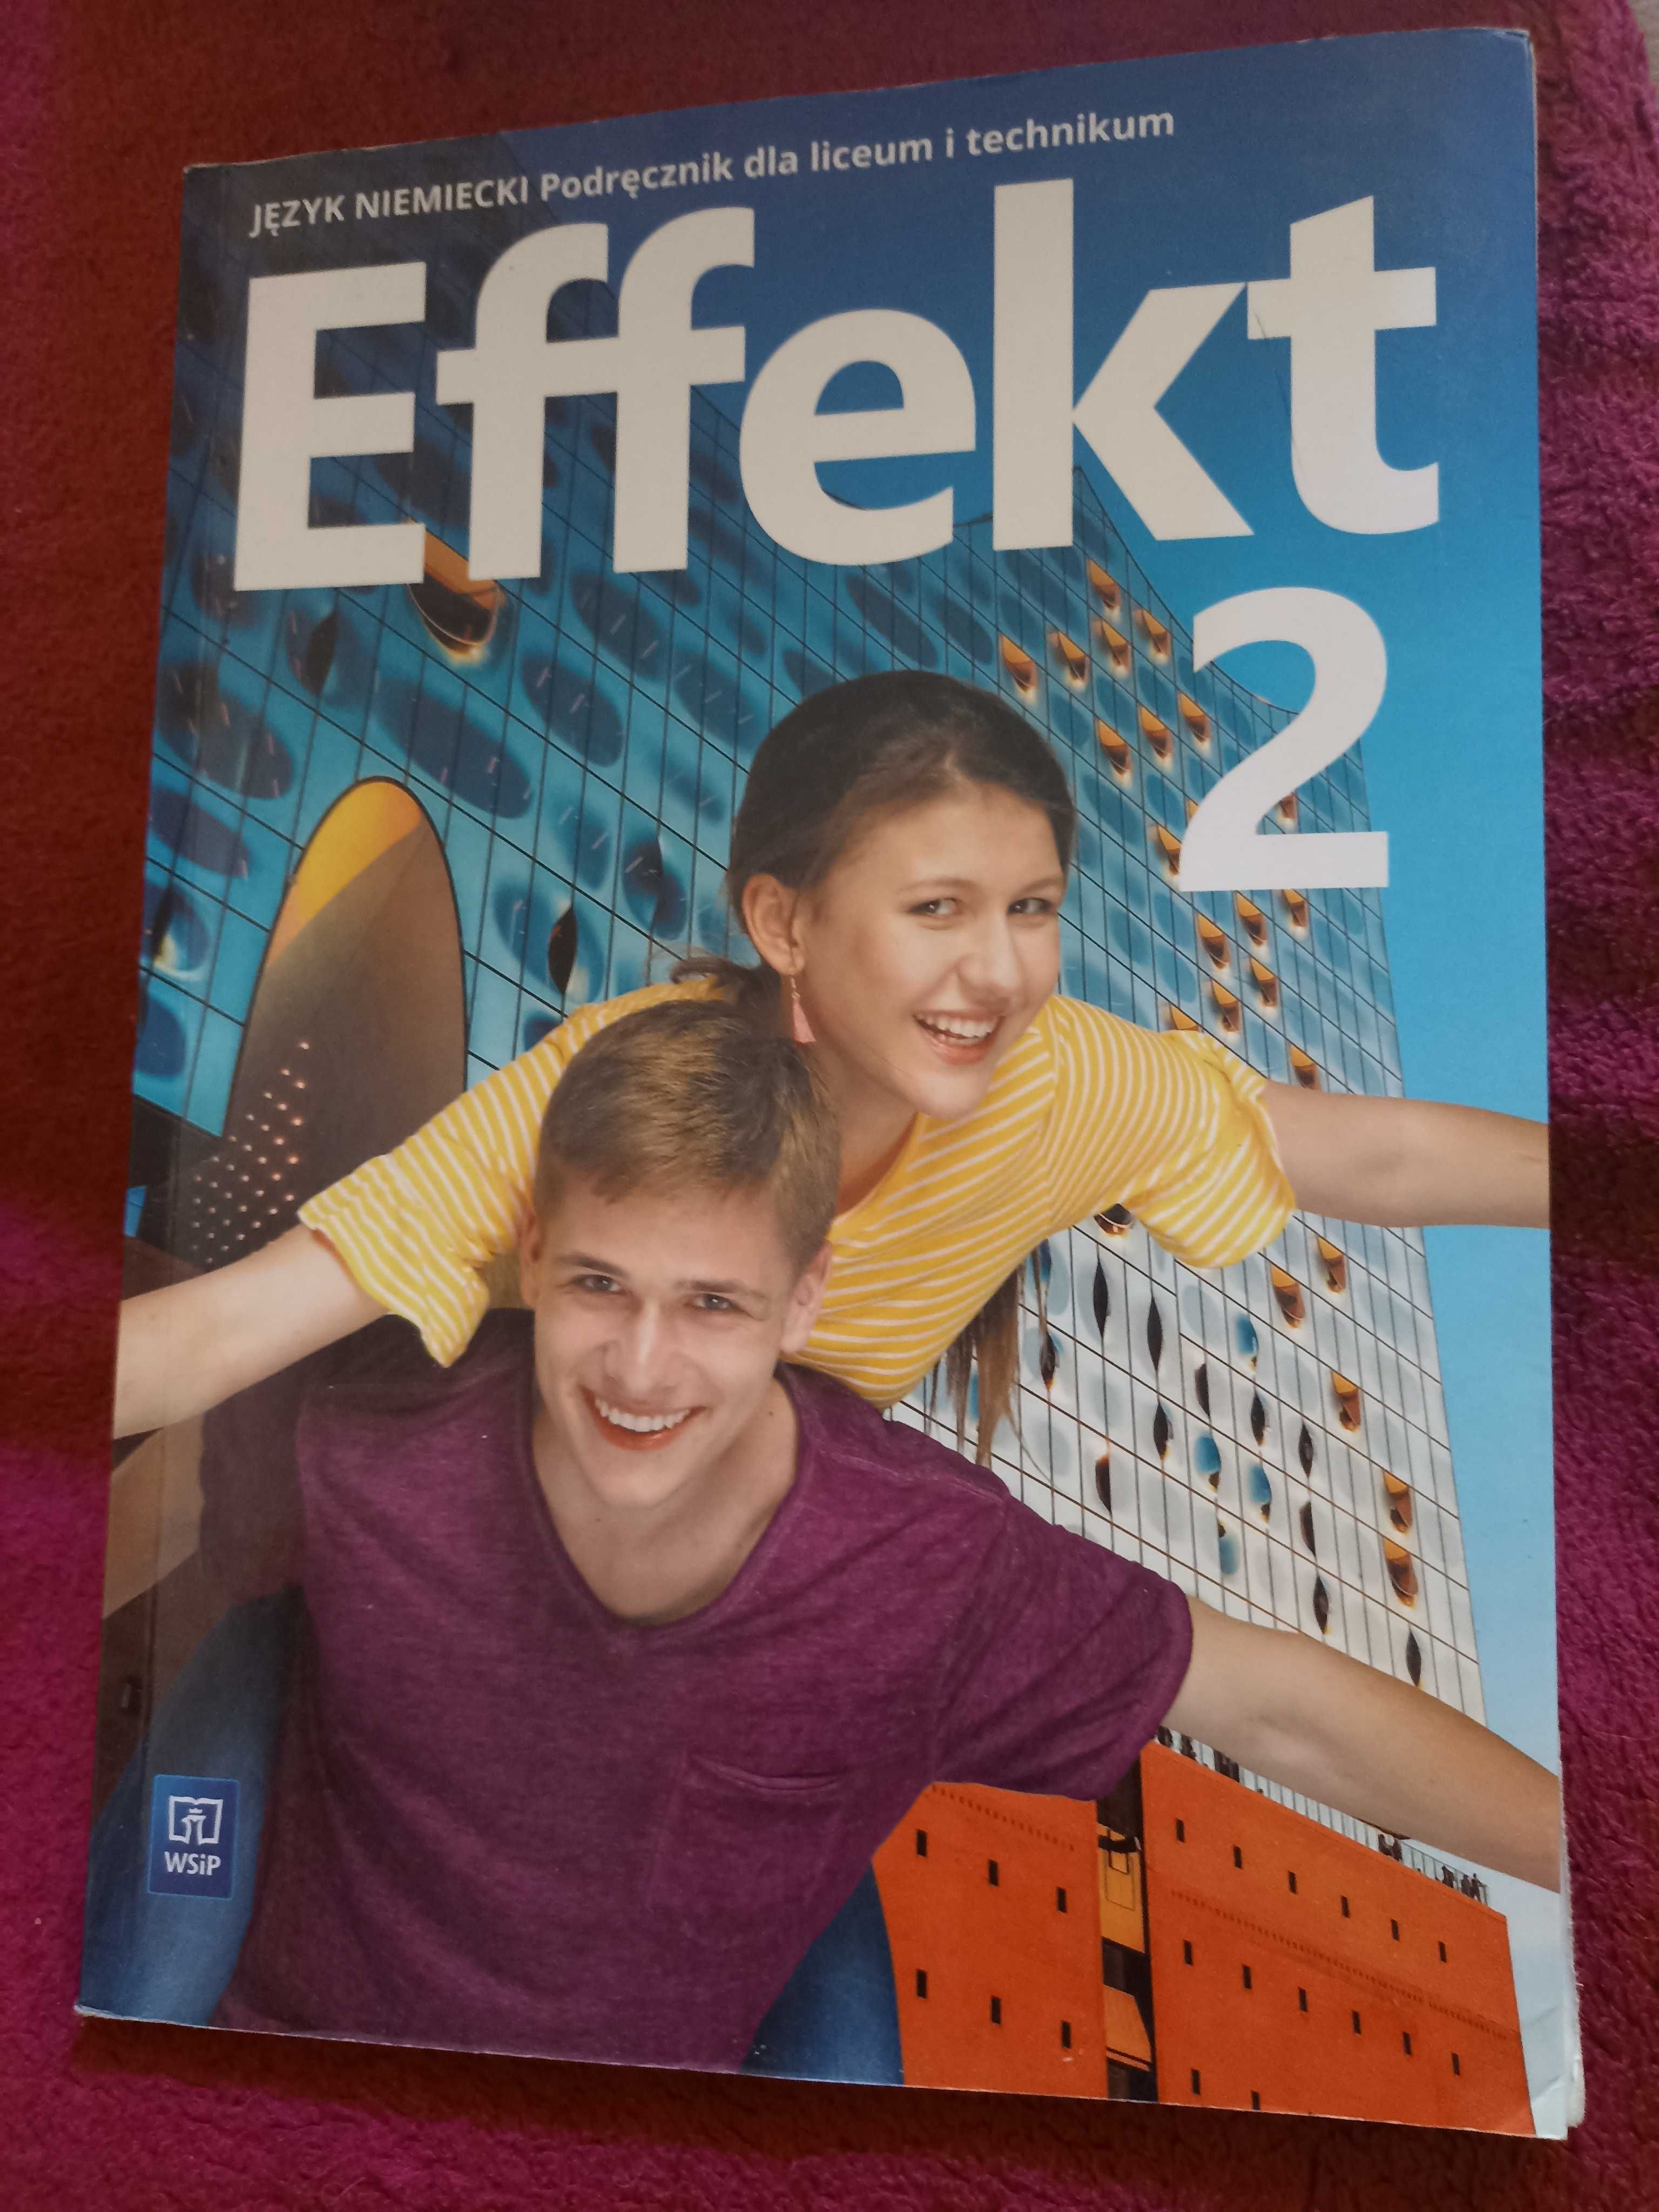 Podręcznik do języka niemieckiego Effekt kl 2 2019 Wsip